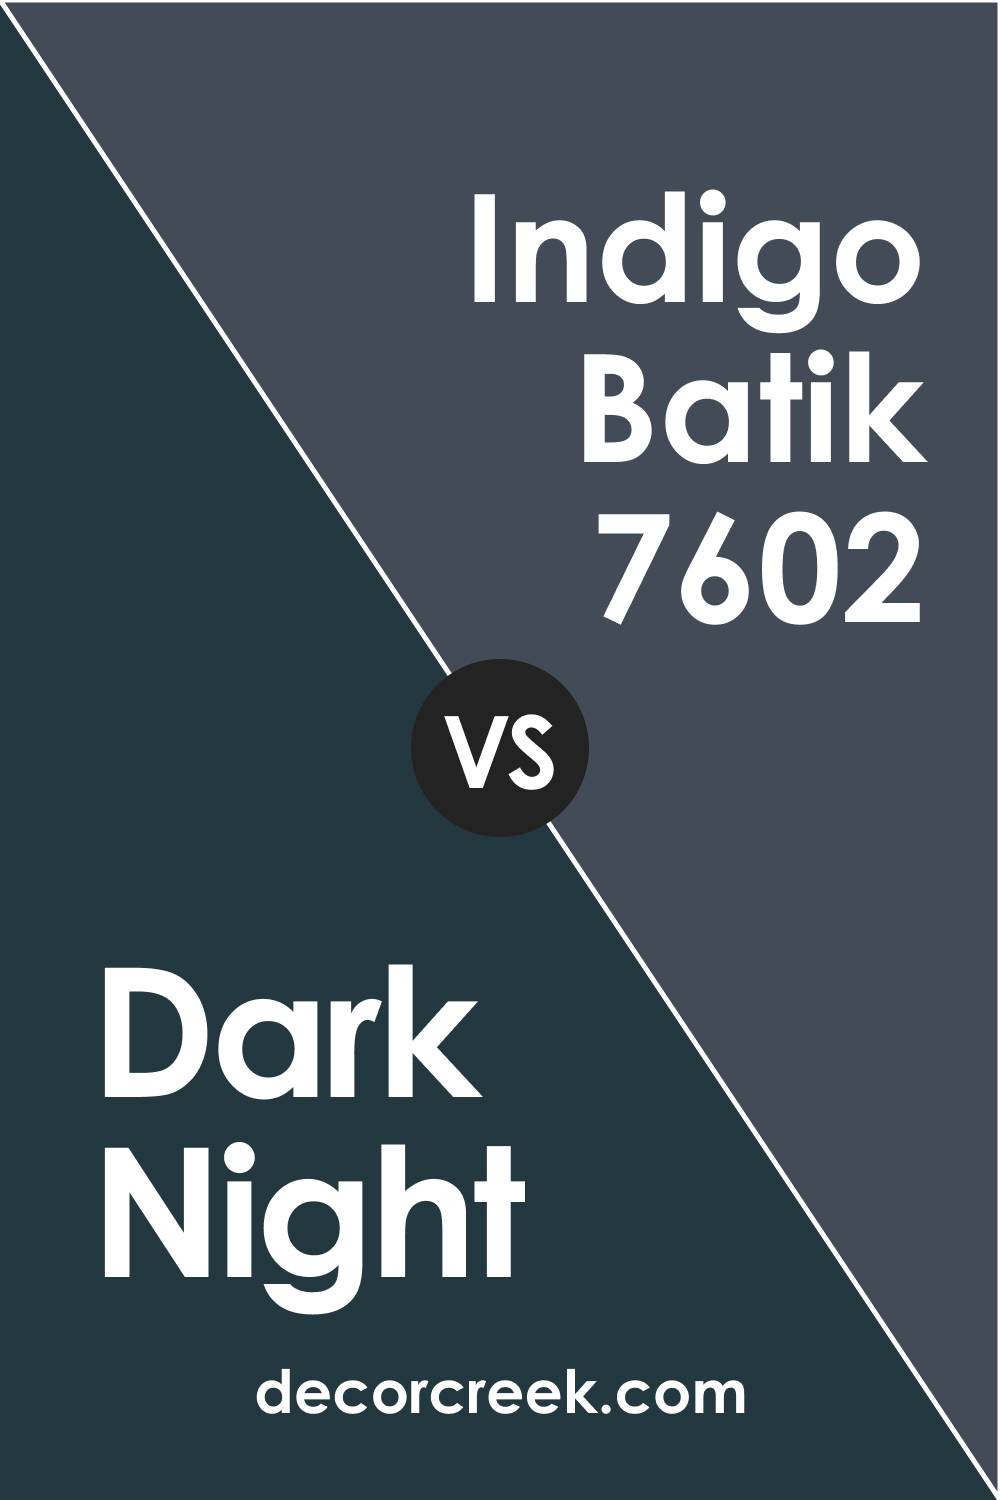 Dark Night vs Indigo Batik